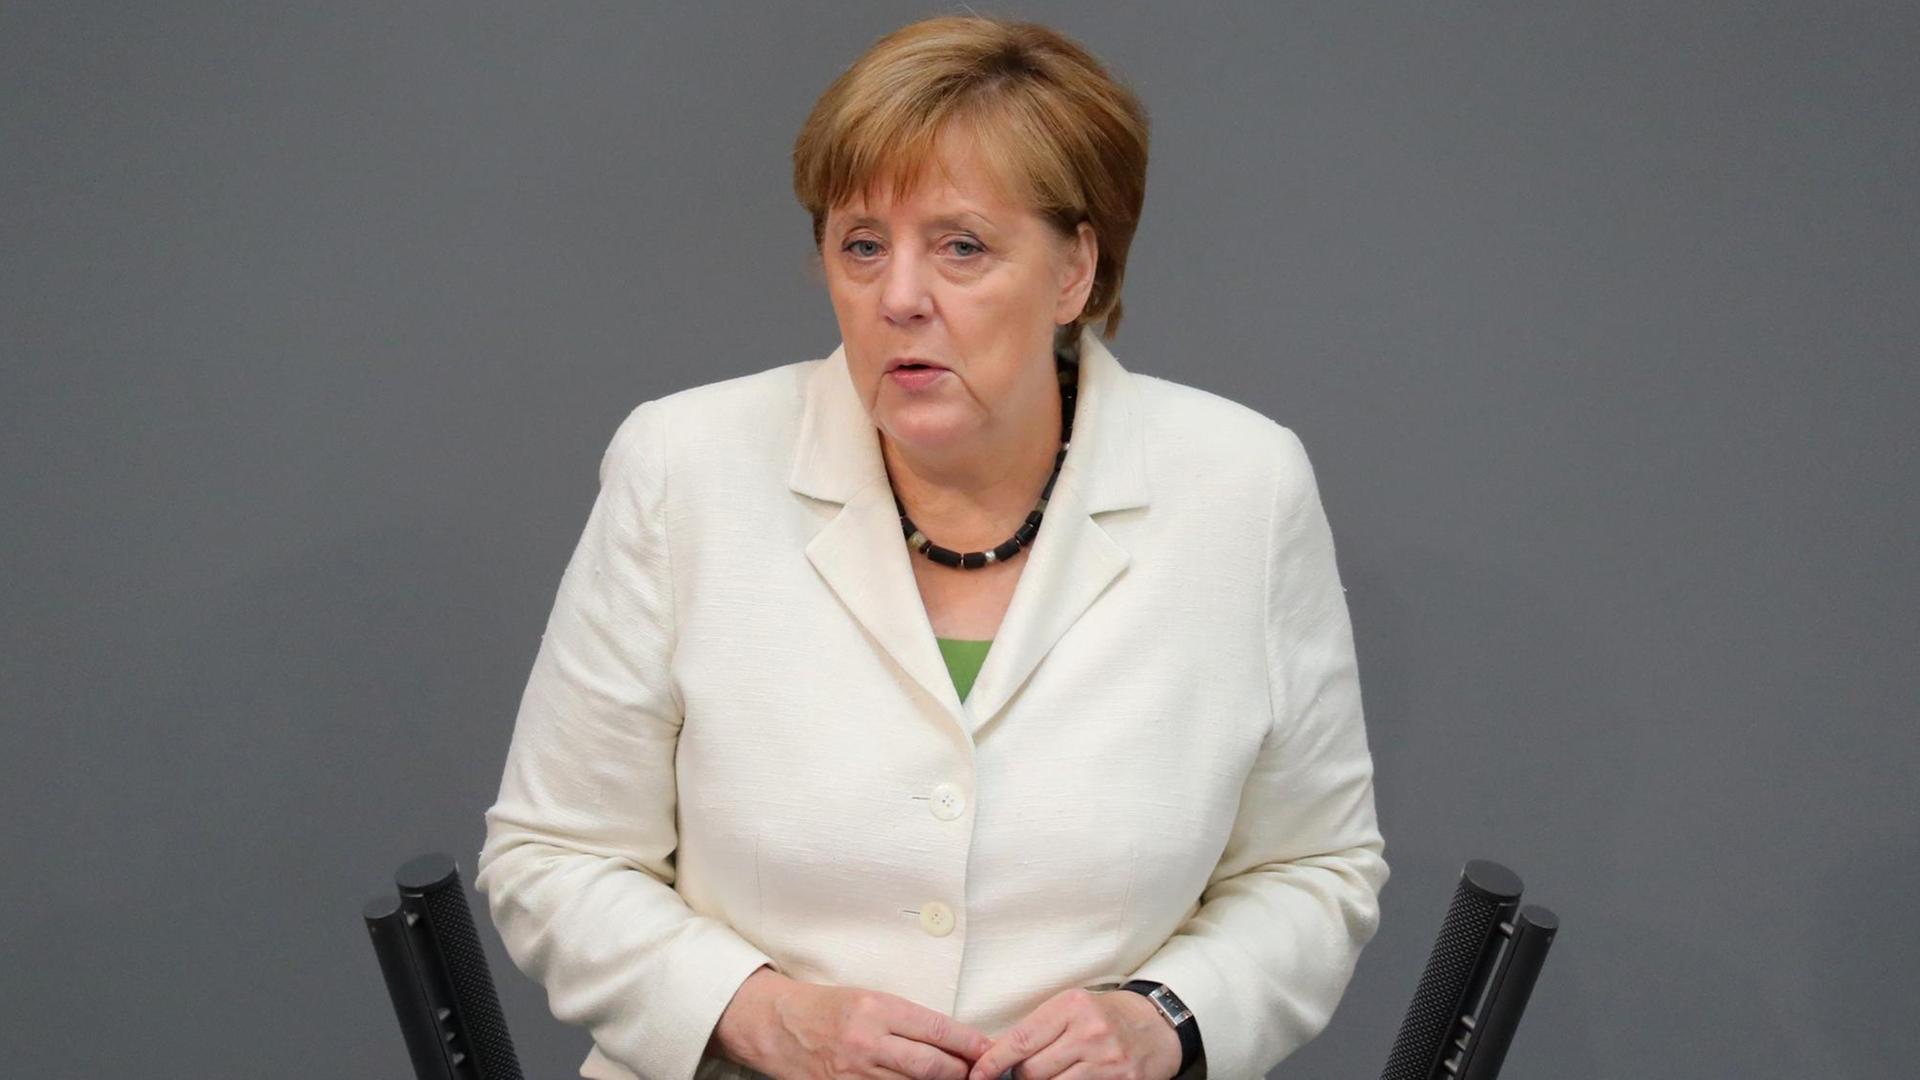 Bundeskanzlerin Angela Merkel (CDU) hält am 28.06.2016 in Berlin im Bundestag eine Regierungserklärung nach dem Brexit-Votum der Briten zu einem EU-Austritt.